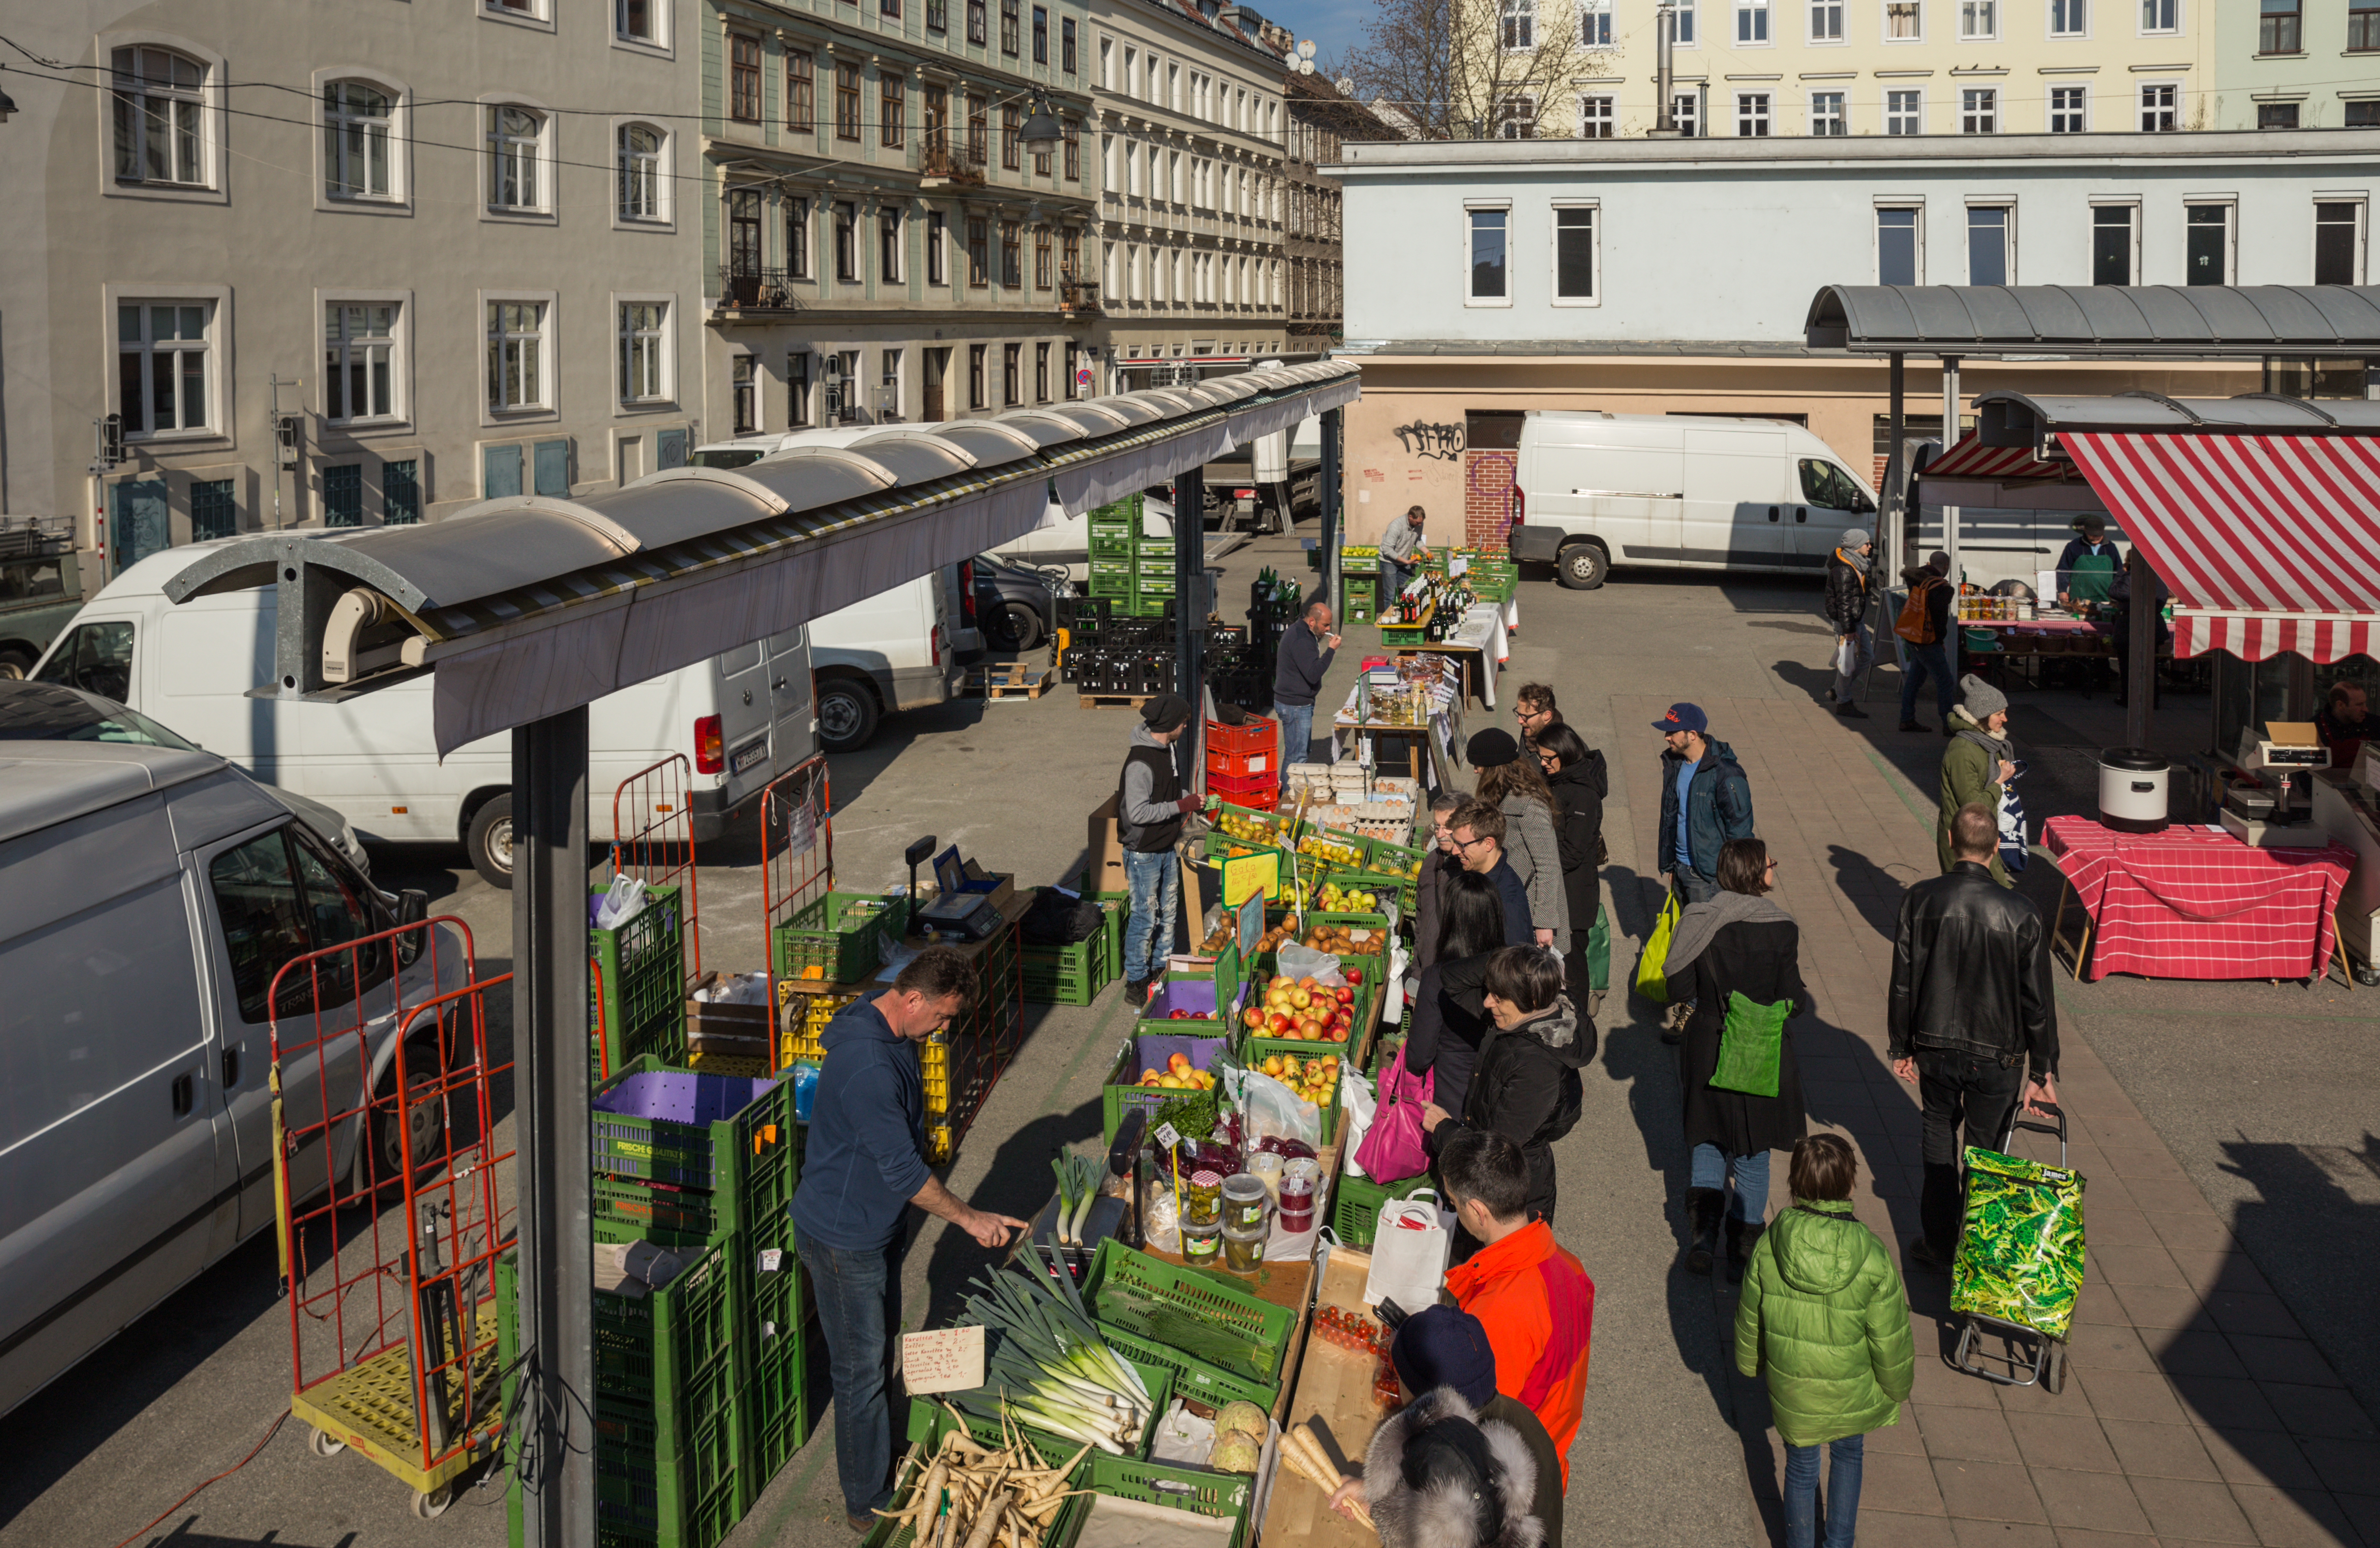 2015-02-21 Samstag am Karmelitermarkt Wien - 9407